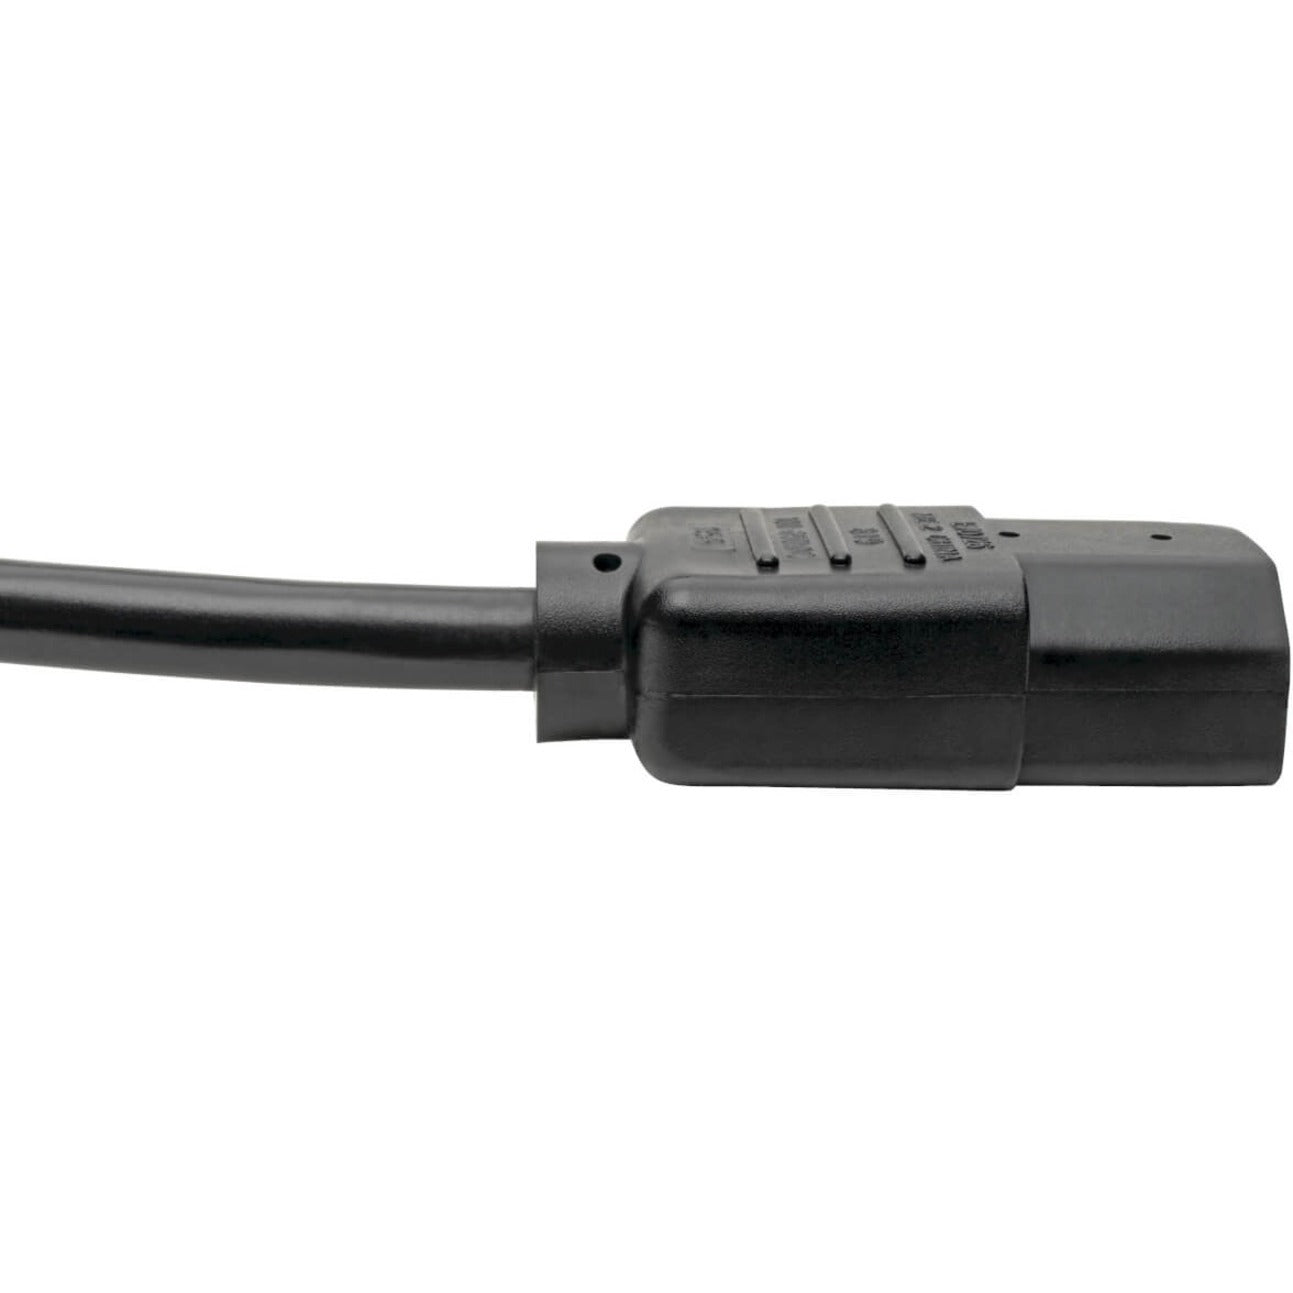 Marca: Tripp Lite Cable de alimentación pesado de 6 pies de calibre 14 AWG IEC-320-C13 a IEC-320-C14 de ángulo recto